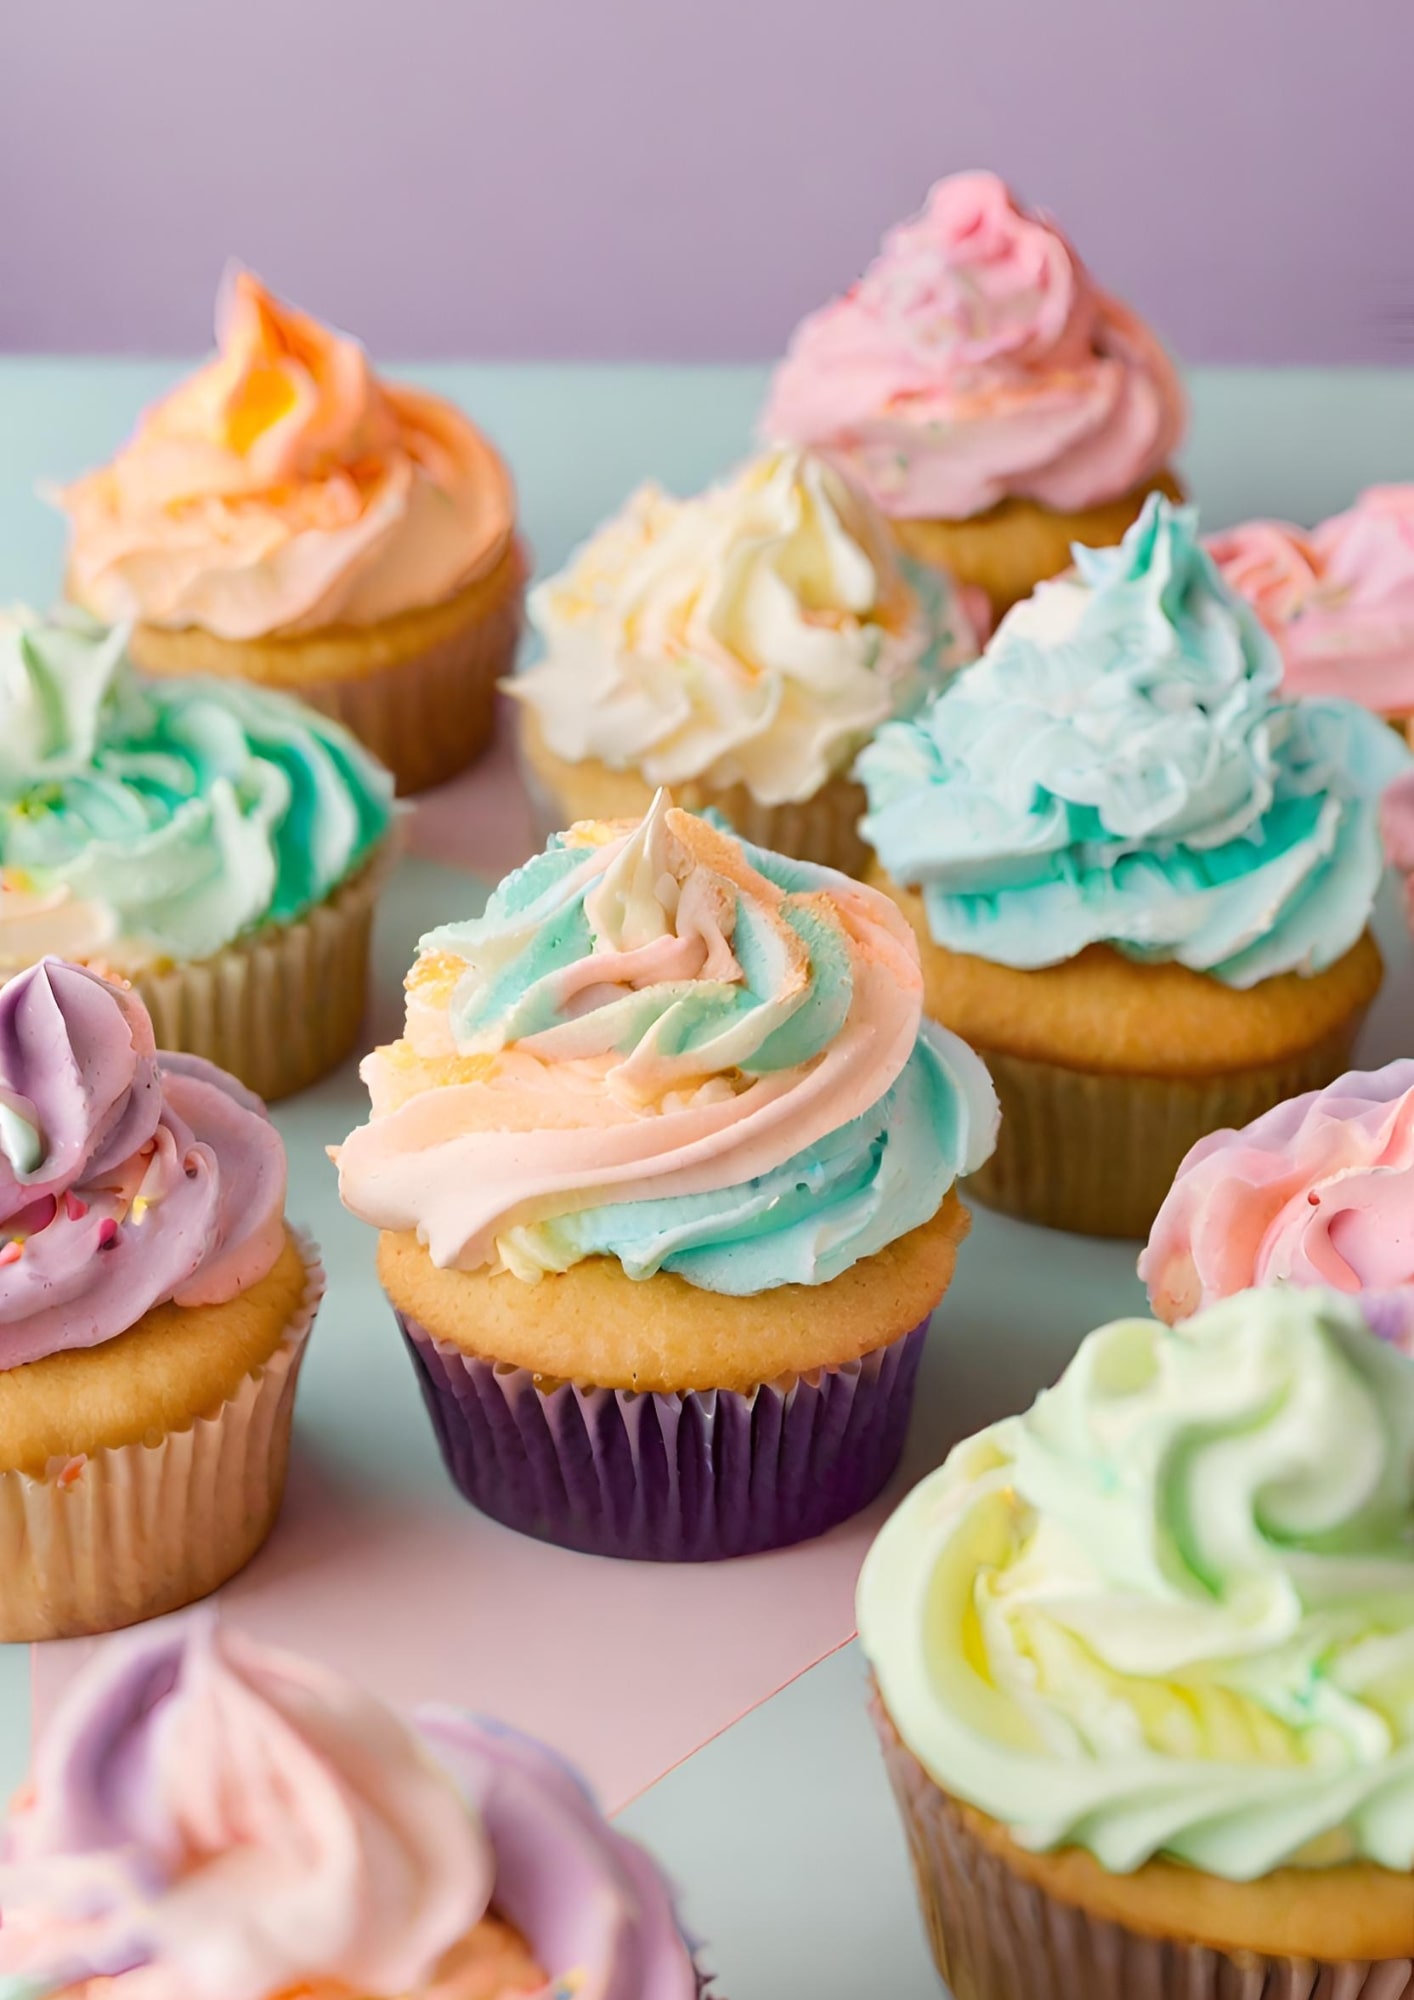 Cupcakes décorés avec des chantilly multicolores dans les tons pastels